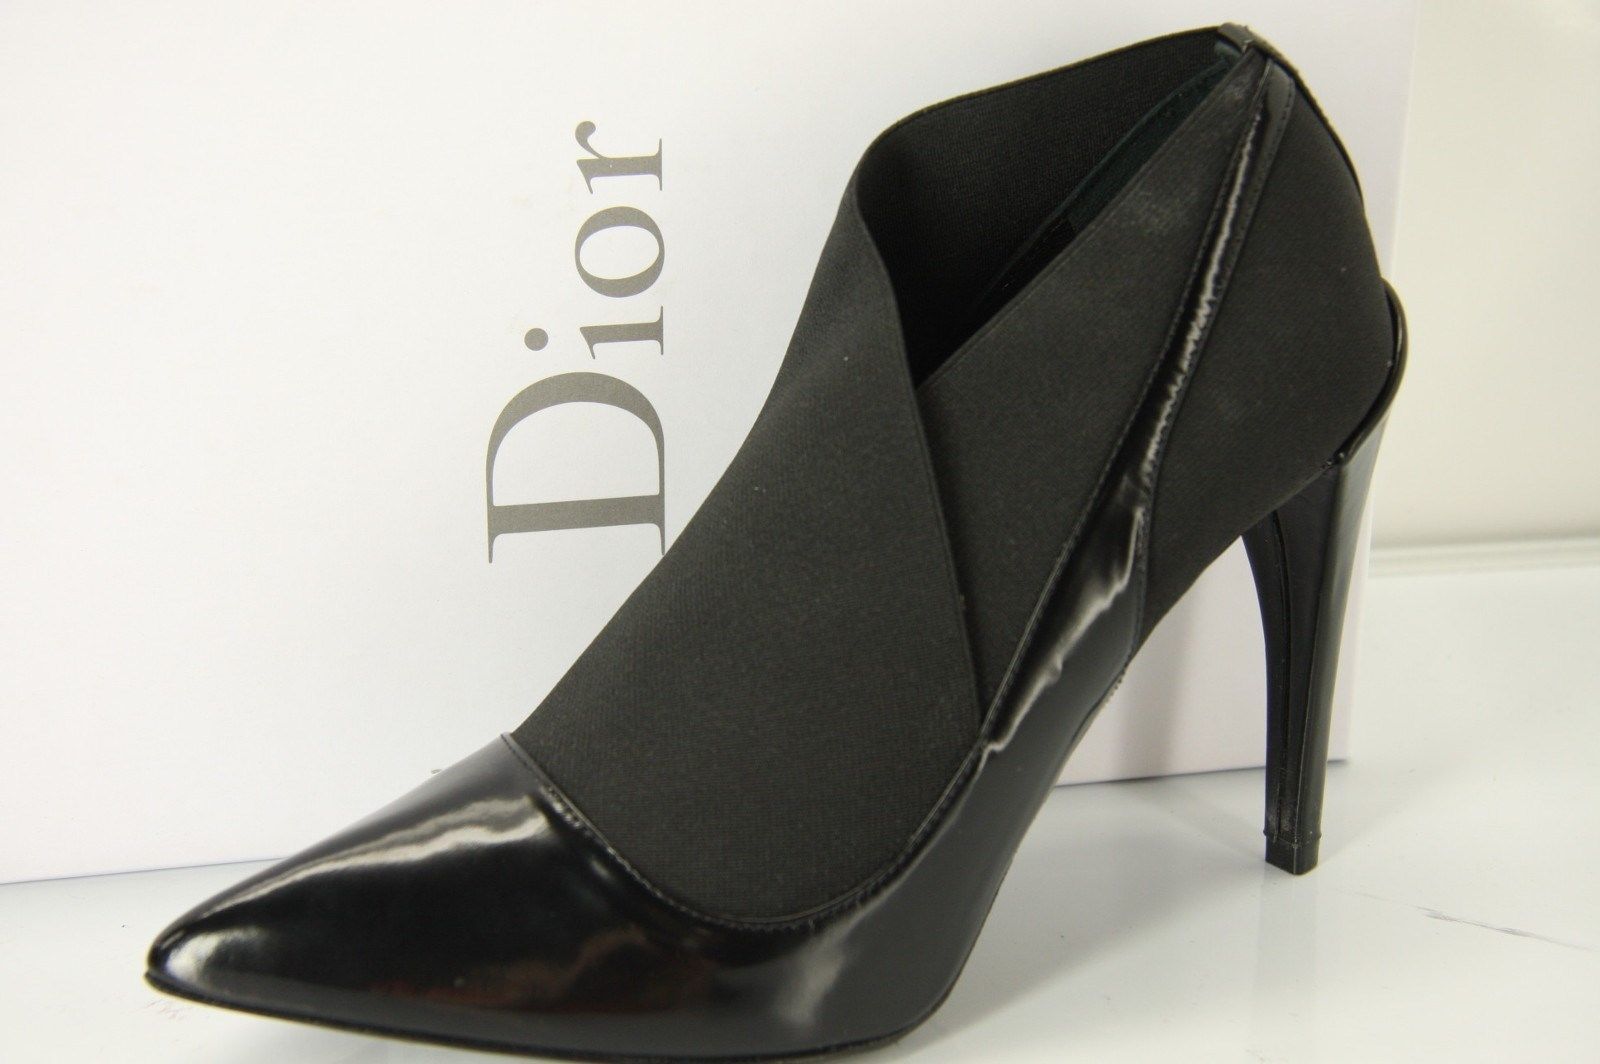 Christian Dior Elastic Strap Pointy Toe Pumps size 35.5 NIB High Heels $950